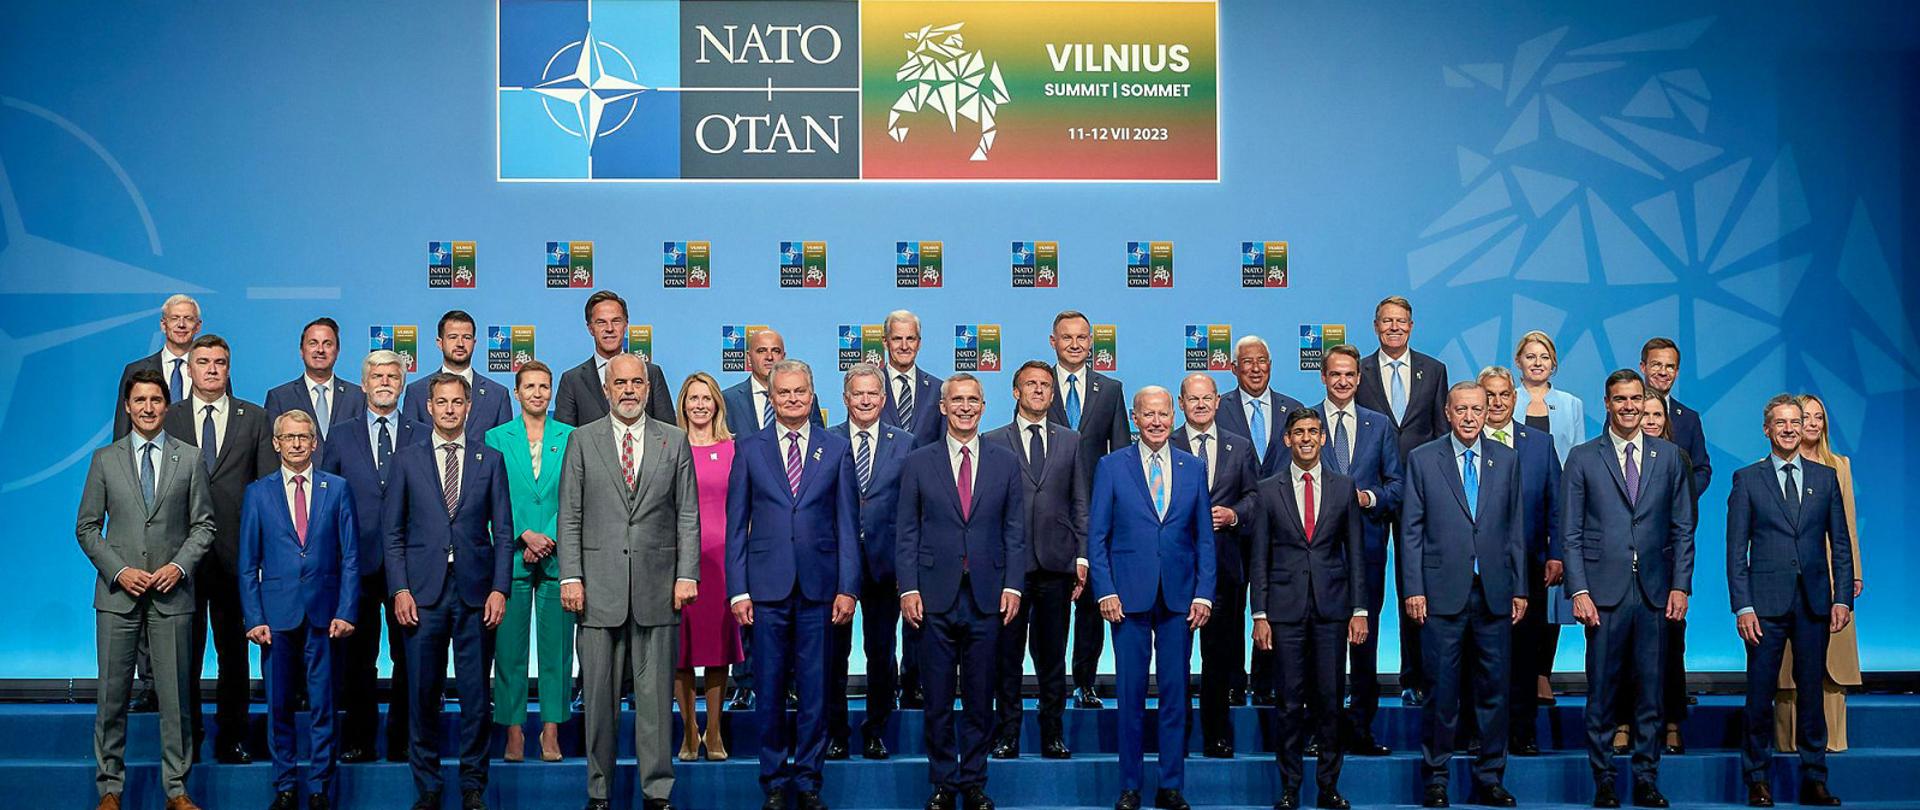 NATO Summit in Vilnius 2023